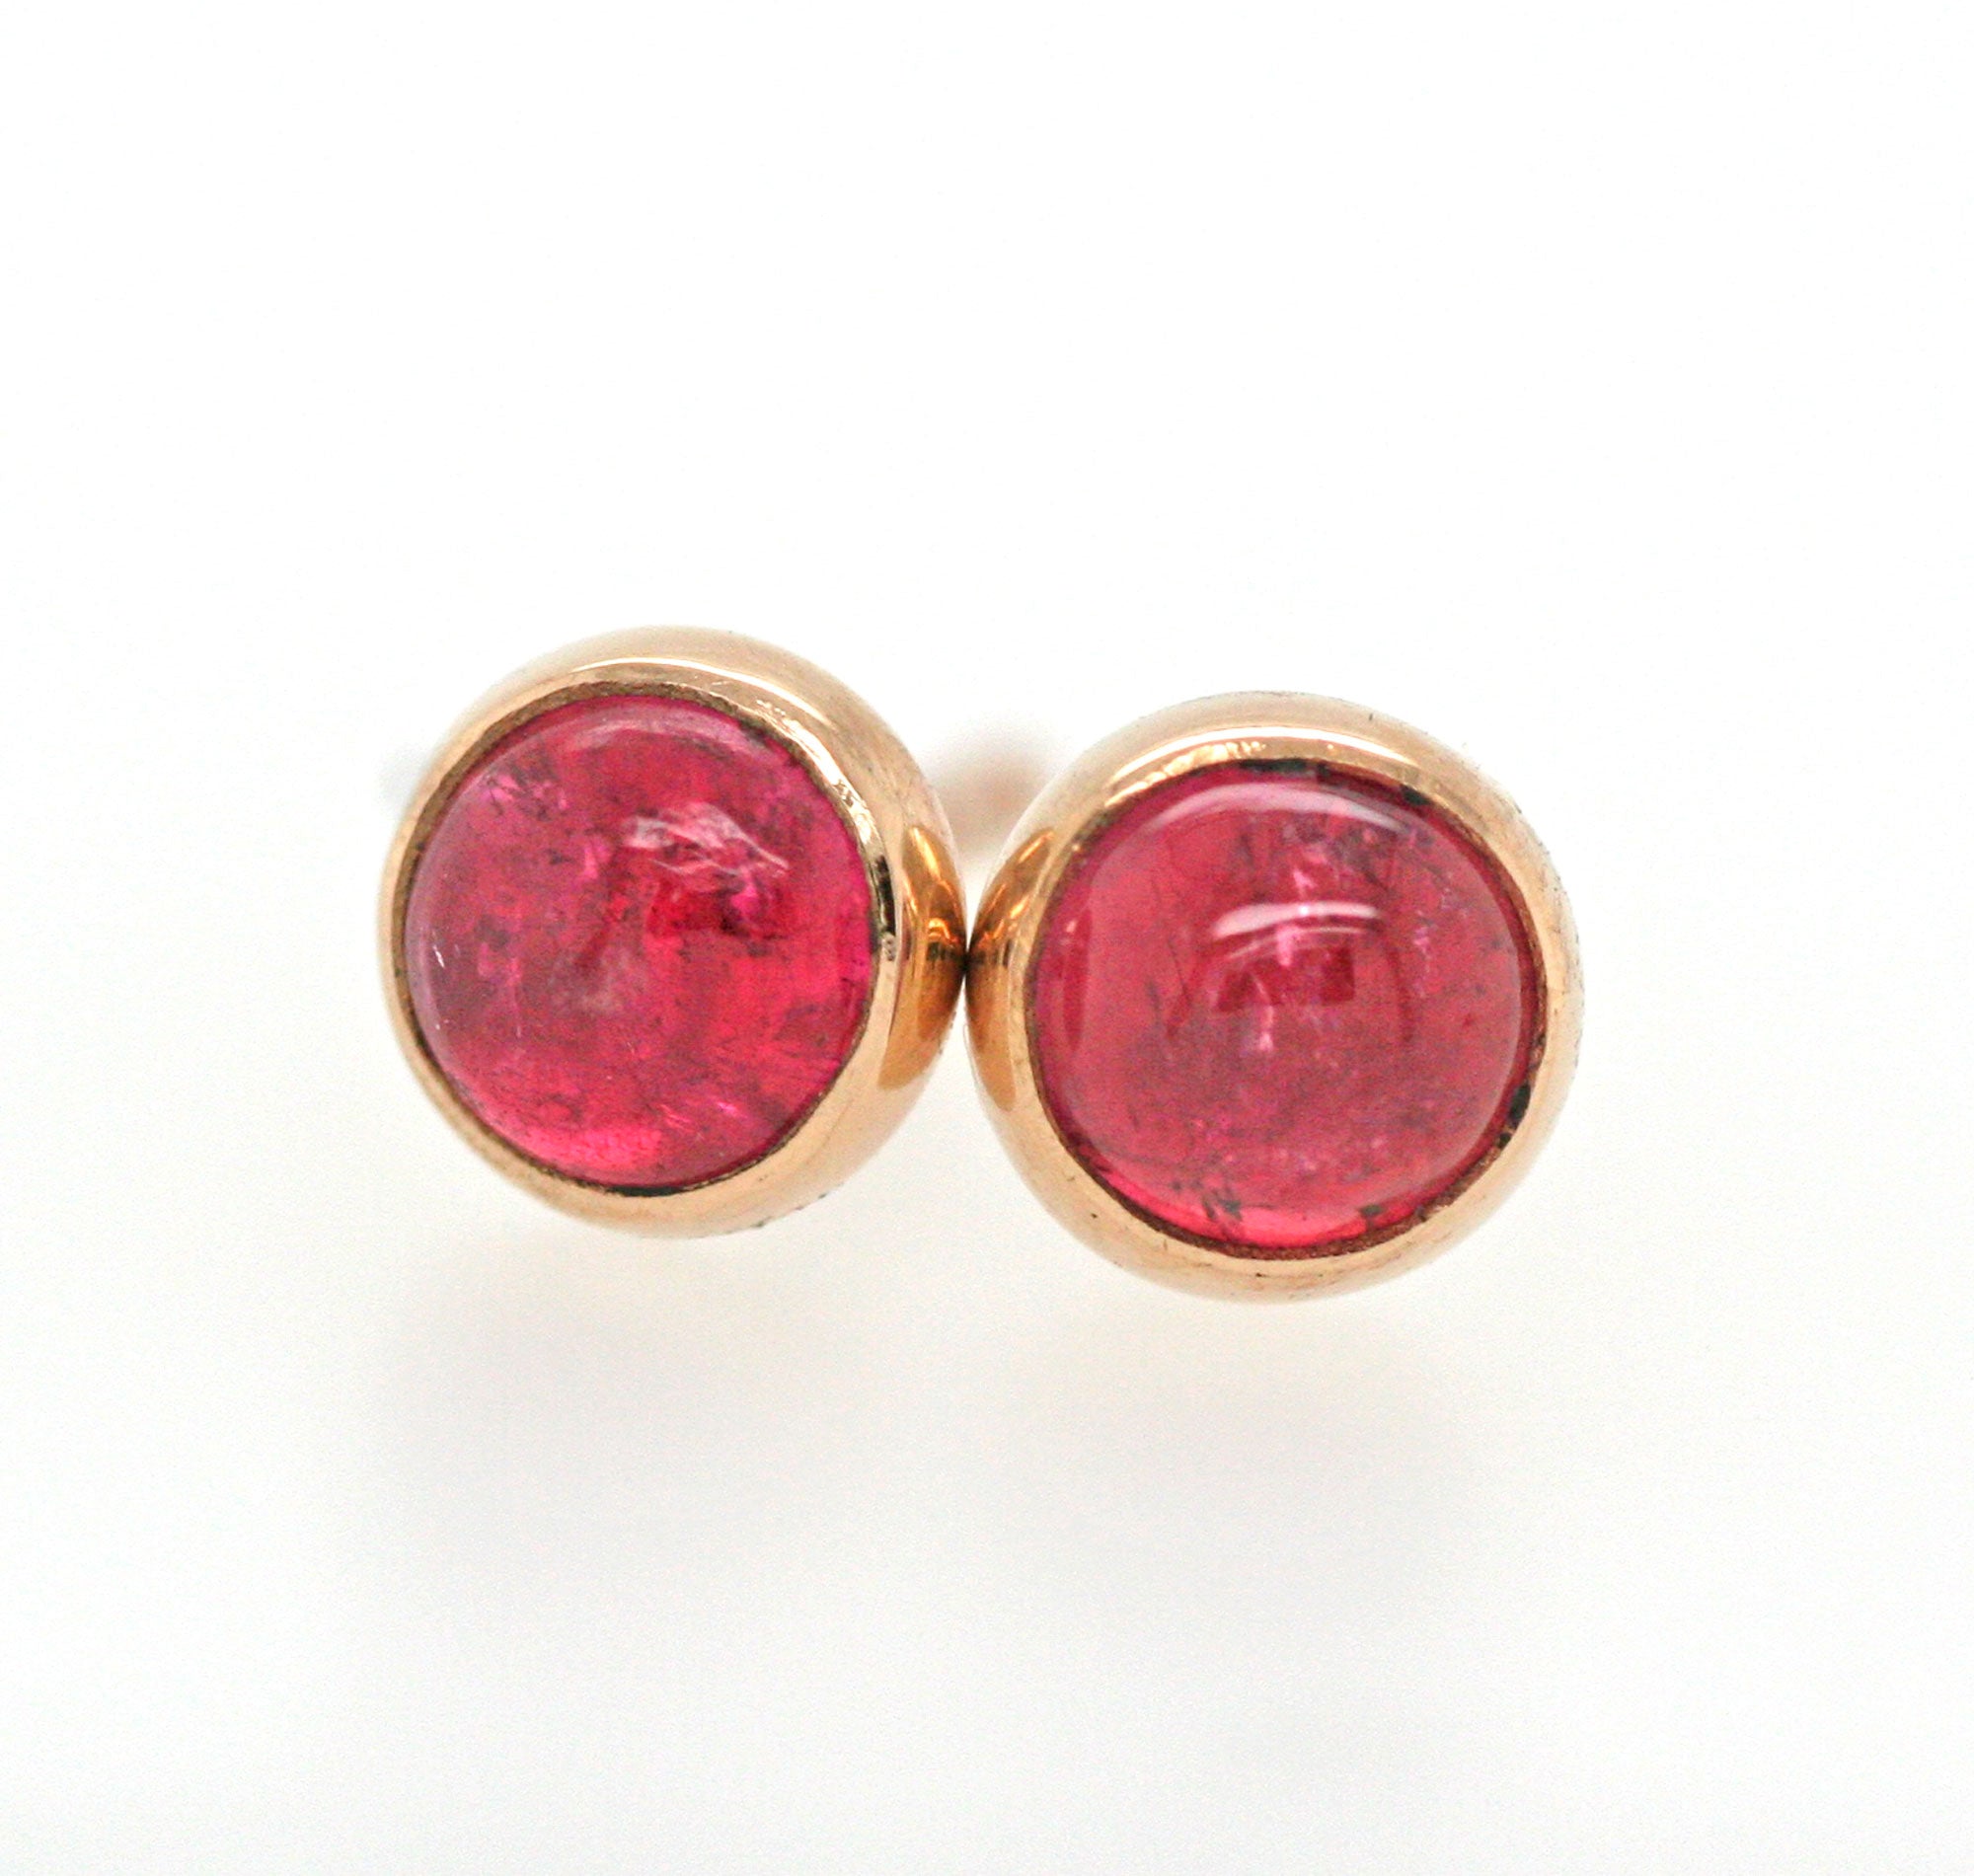 Pink Tourmaline Earrings, Solid 14k Gold Earrings, Pink Tourmaline Gold Bezel Stud Earrings, Minimalist Earrings, Gemstone Stud Earrings